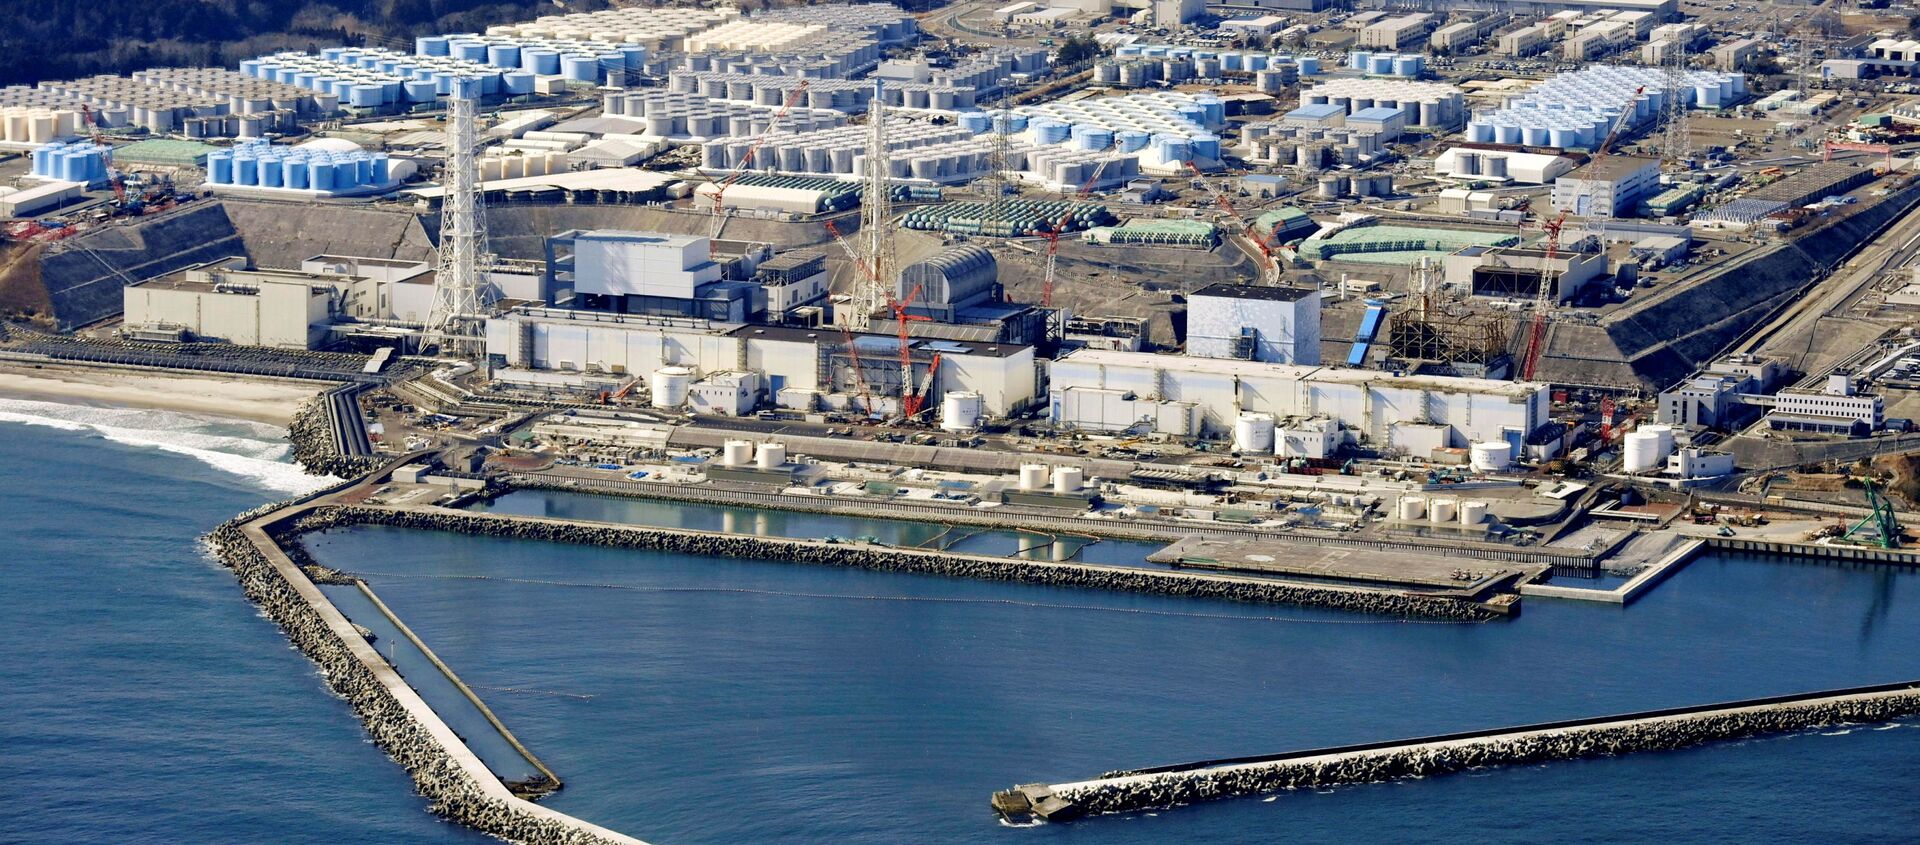 Ảnh chụp từ trên không cho thấy các bể chứa nước đã qua xử lý tại nhà máy điện hạt nhân Fukushima Daiichi bị sóng thần ở thị trấn Okuma, tỉnh Fukushima, Nhật Bản ngày 13 tháng 2 năm 2021, trong bức ảnh này do Kyodo chụp. - Sputnik Việt Nam, 1920, 14.04.2021